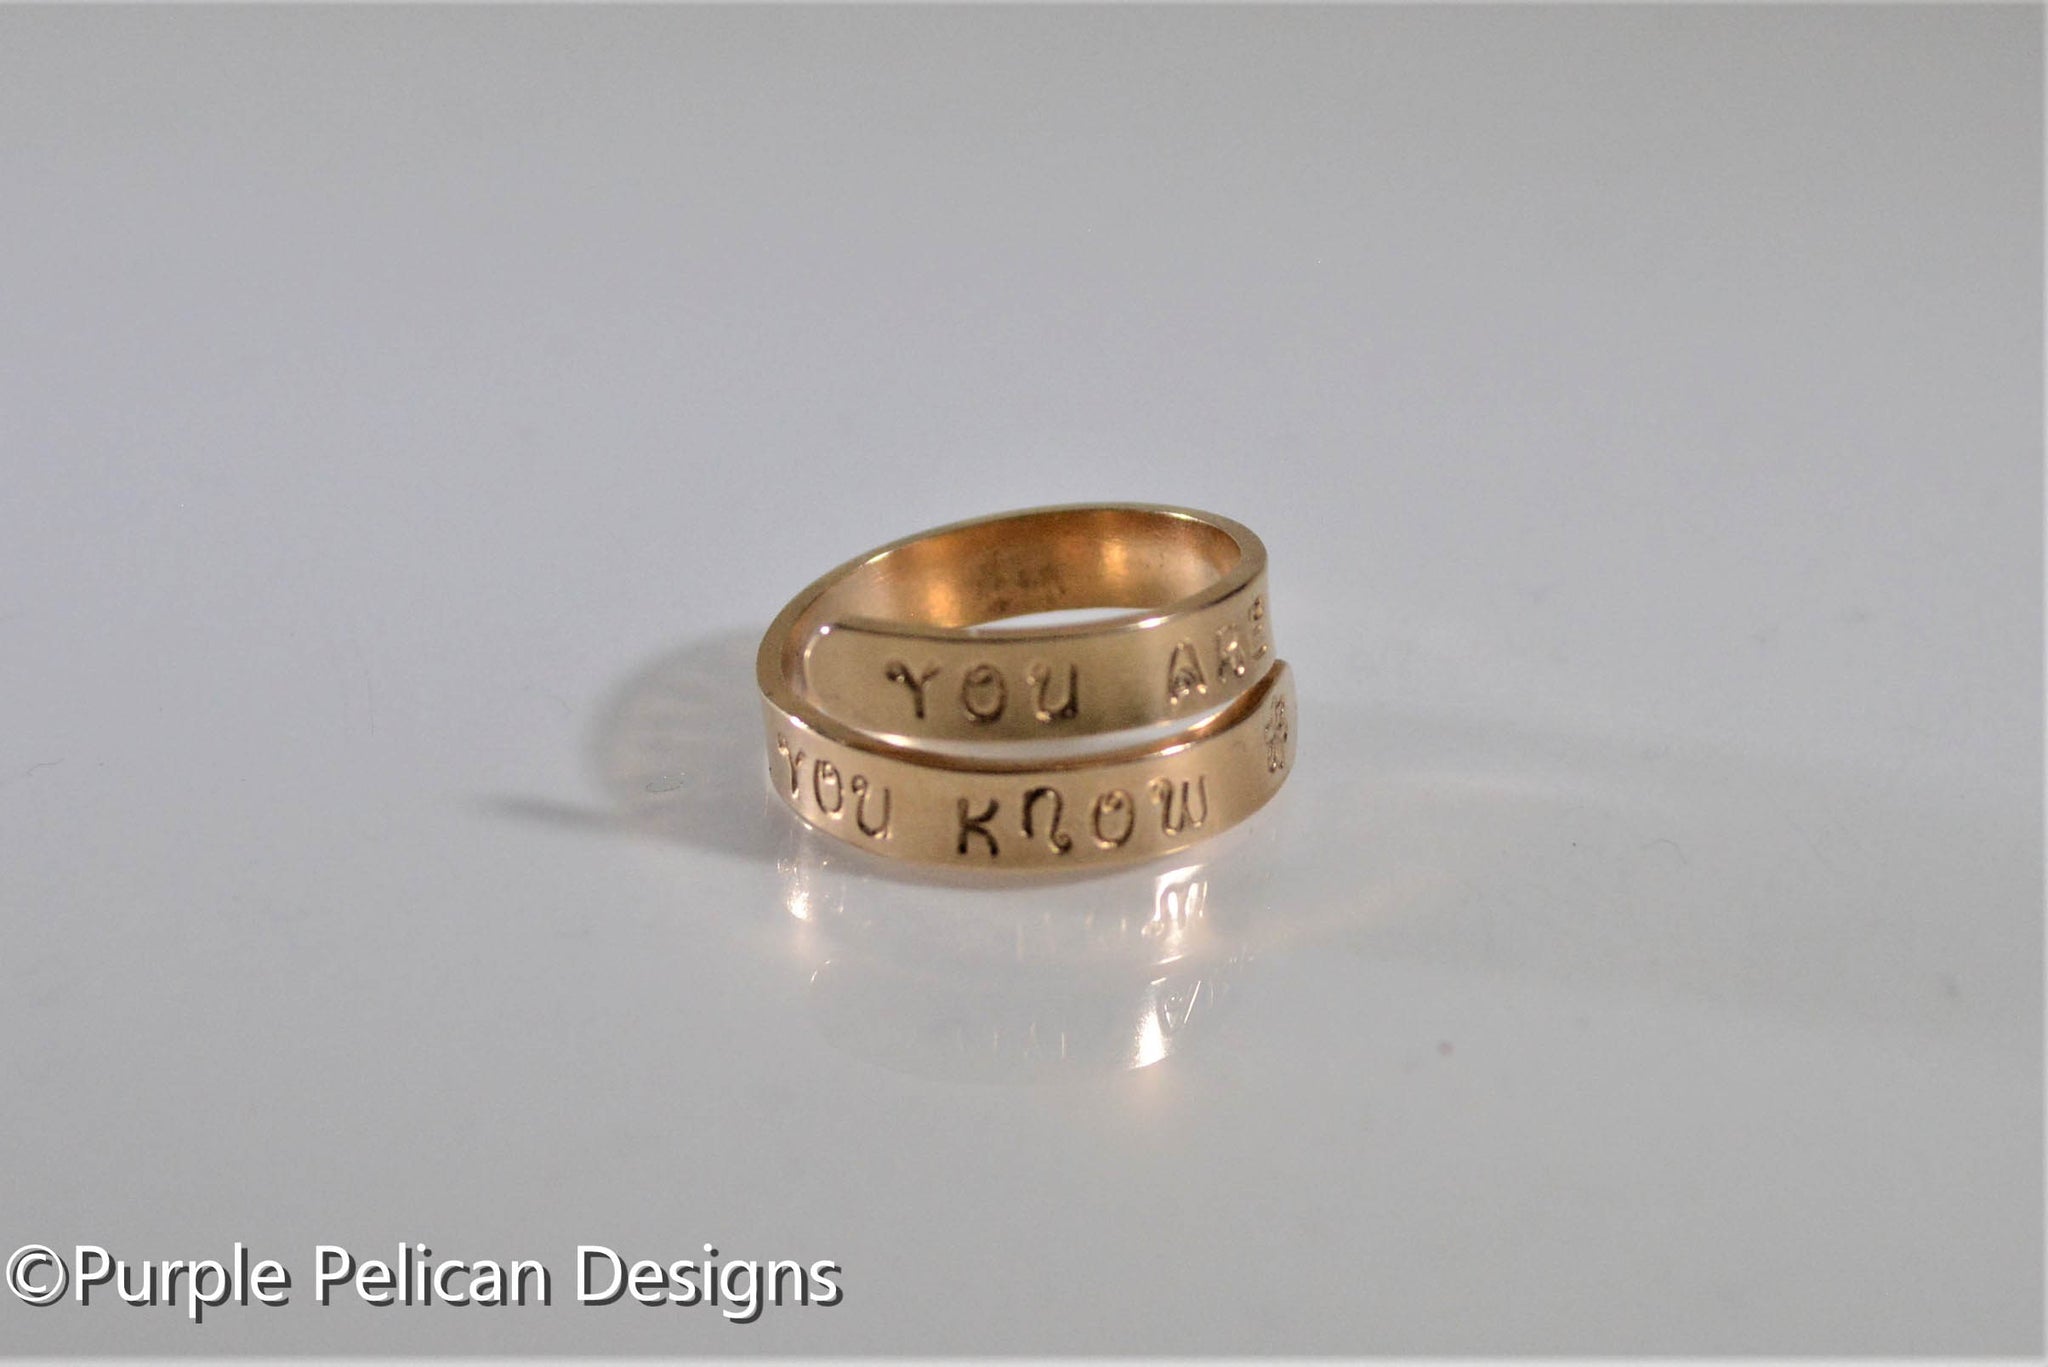 Name Ring Designs: यह सुन्दर-सुन्दर डिजाइन वाली अँगूठिया बढ़ाएगी आपकी  उंगलियों की शोभा, देखिये नए लेटेस्ट डिजाइंस